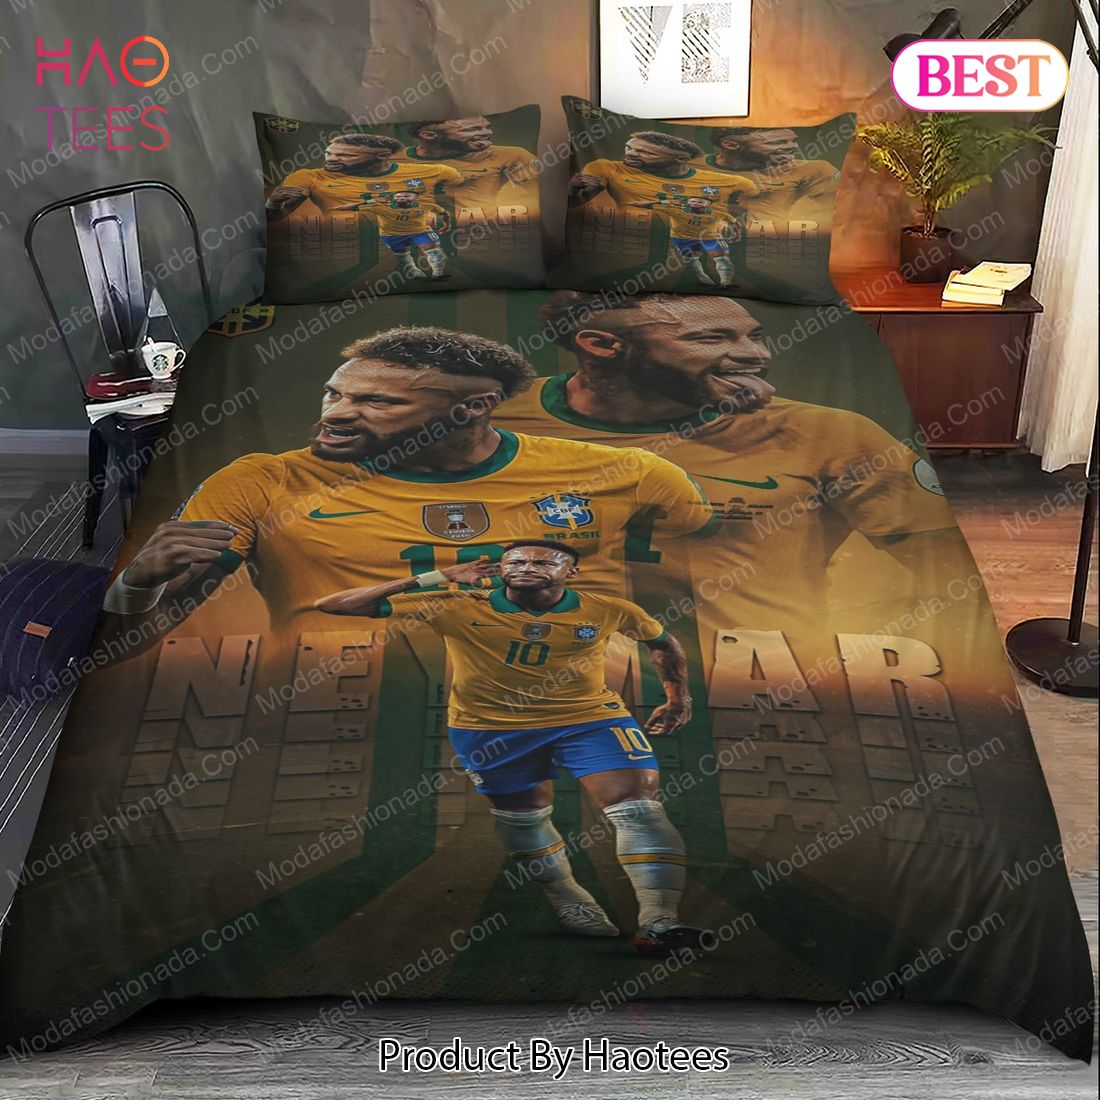 Buy Neymar Brazil Bedding Sets 01 Bed Sets, Bedroom Sets, Comforter Sets, Duvet Cover, Bedspread